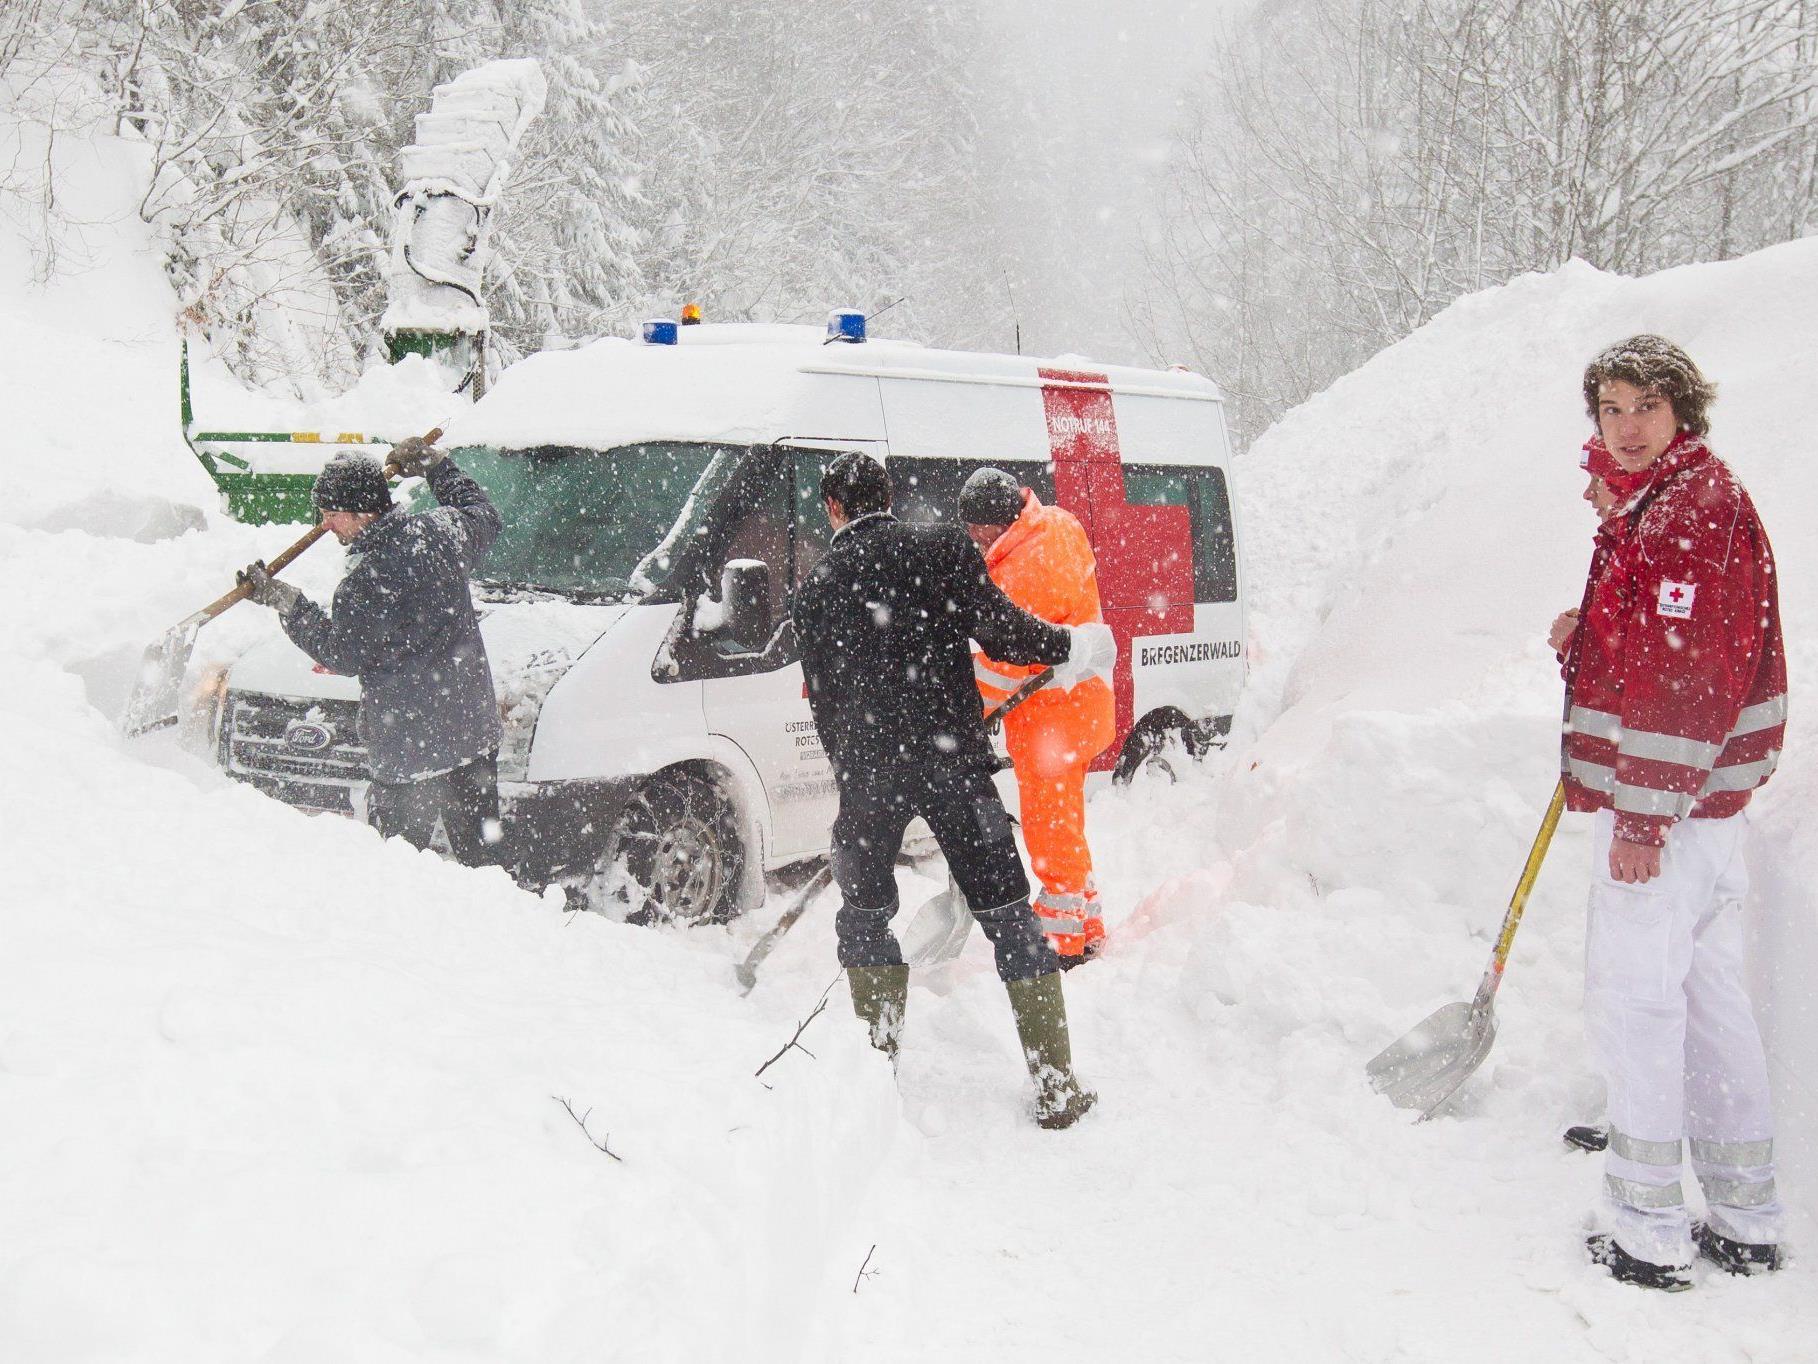 Rettungsauto von Schneerutsch erfasst